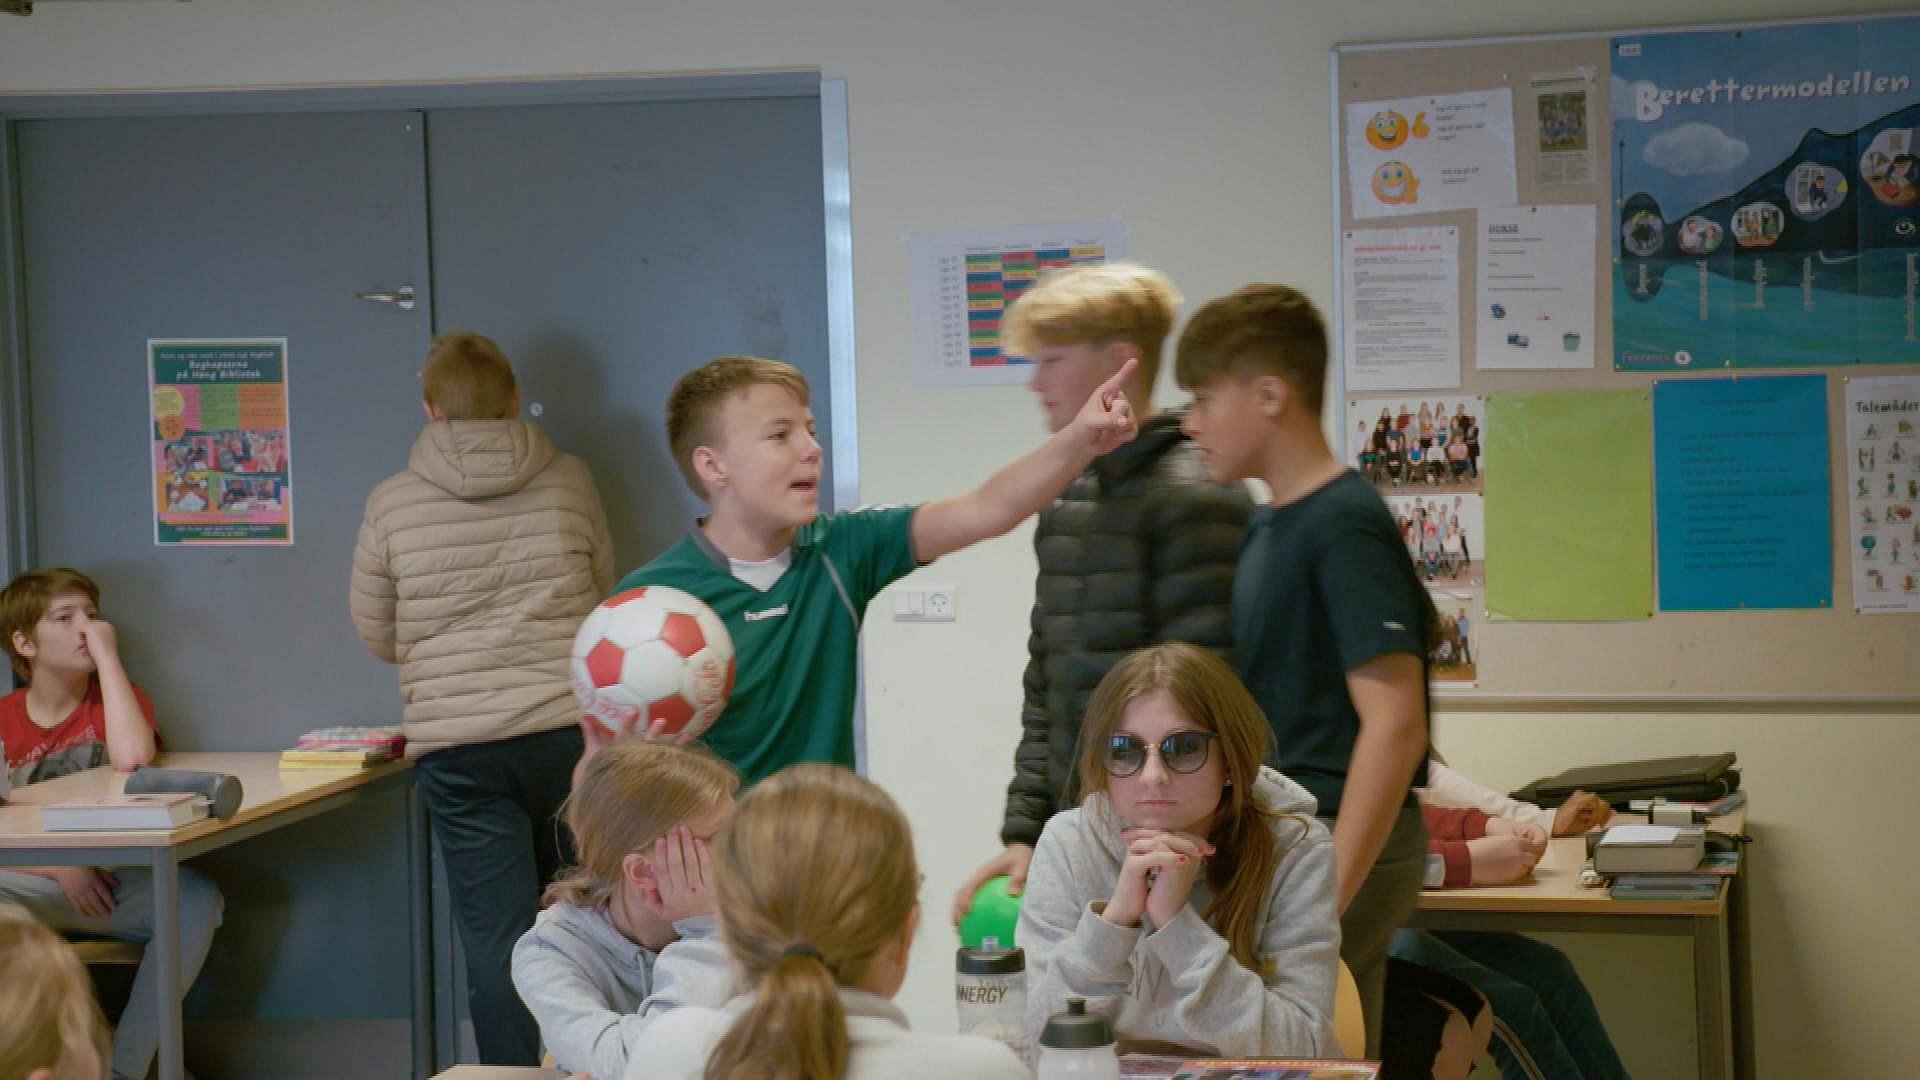 protektor ros Eksklusiv Støj og uro plager skole - skaber problemer for børnenes trivsel | TV2 ØST